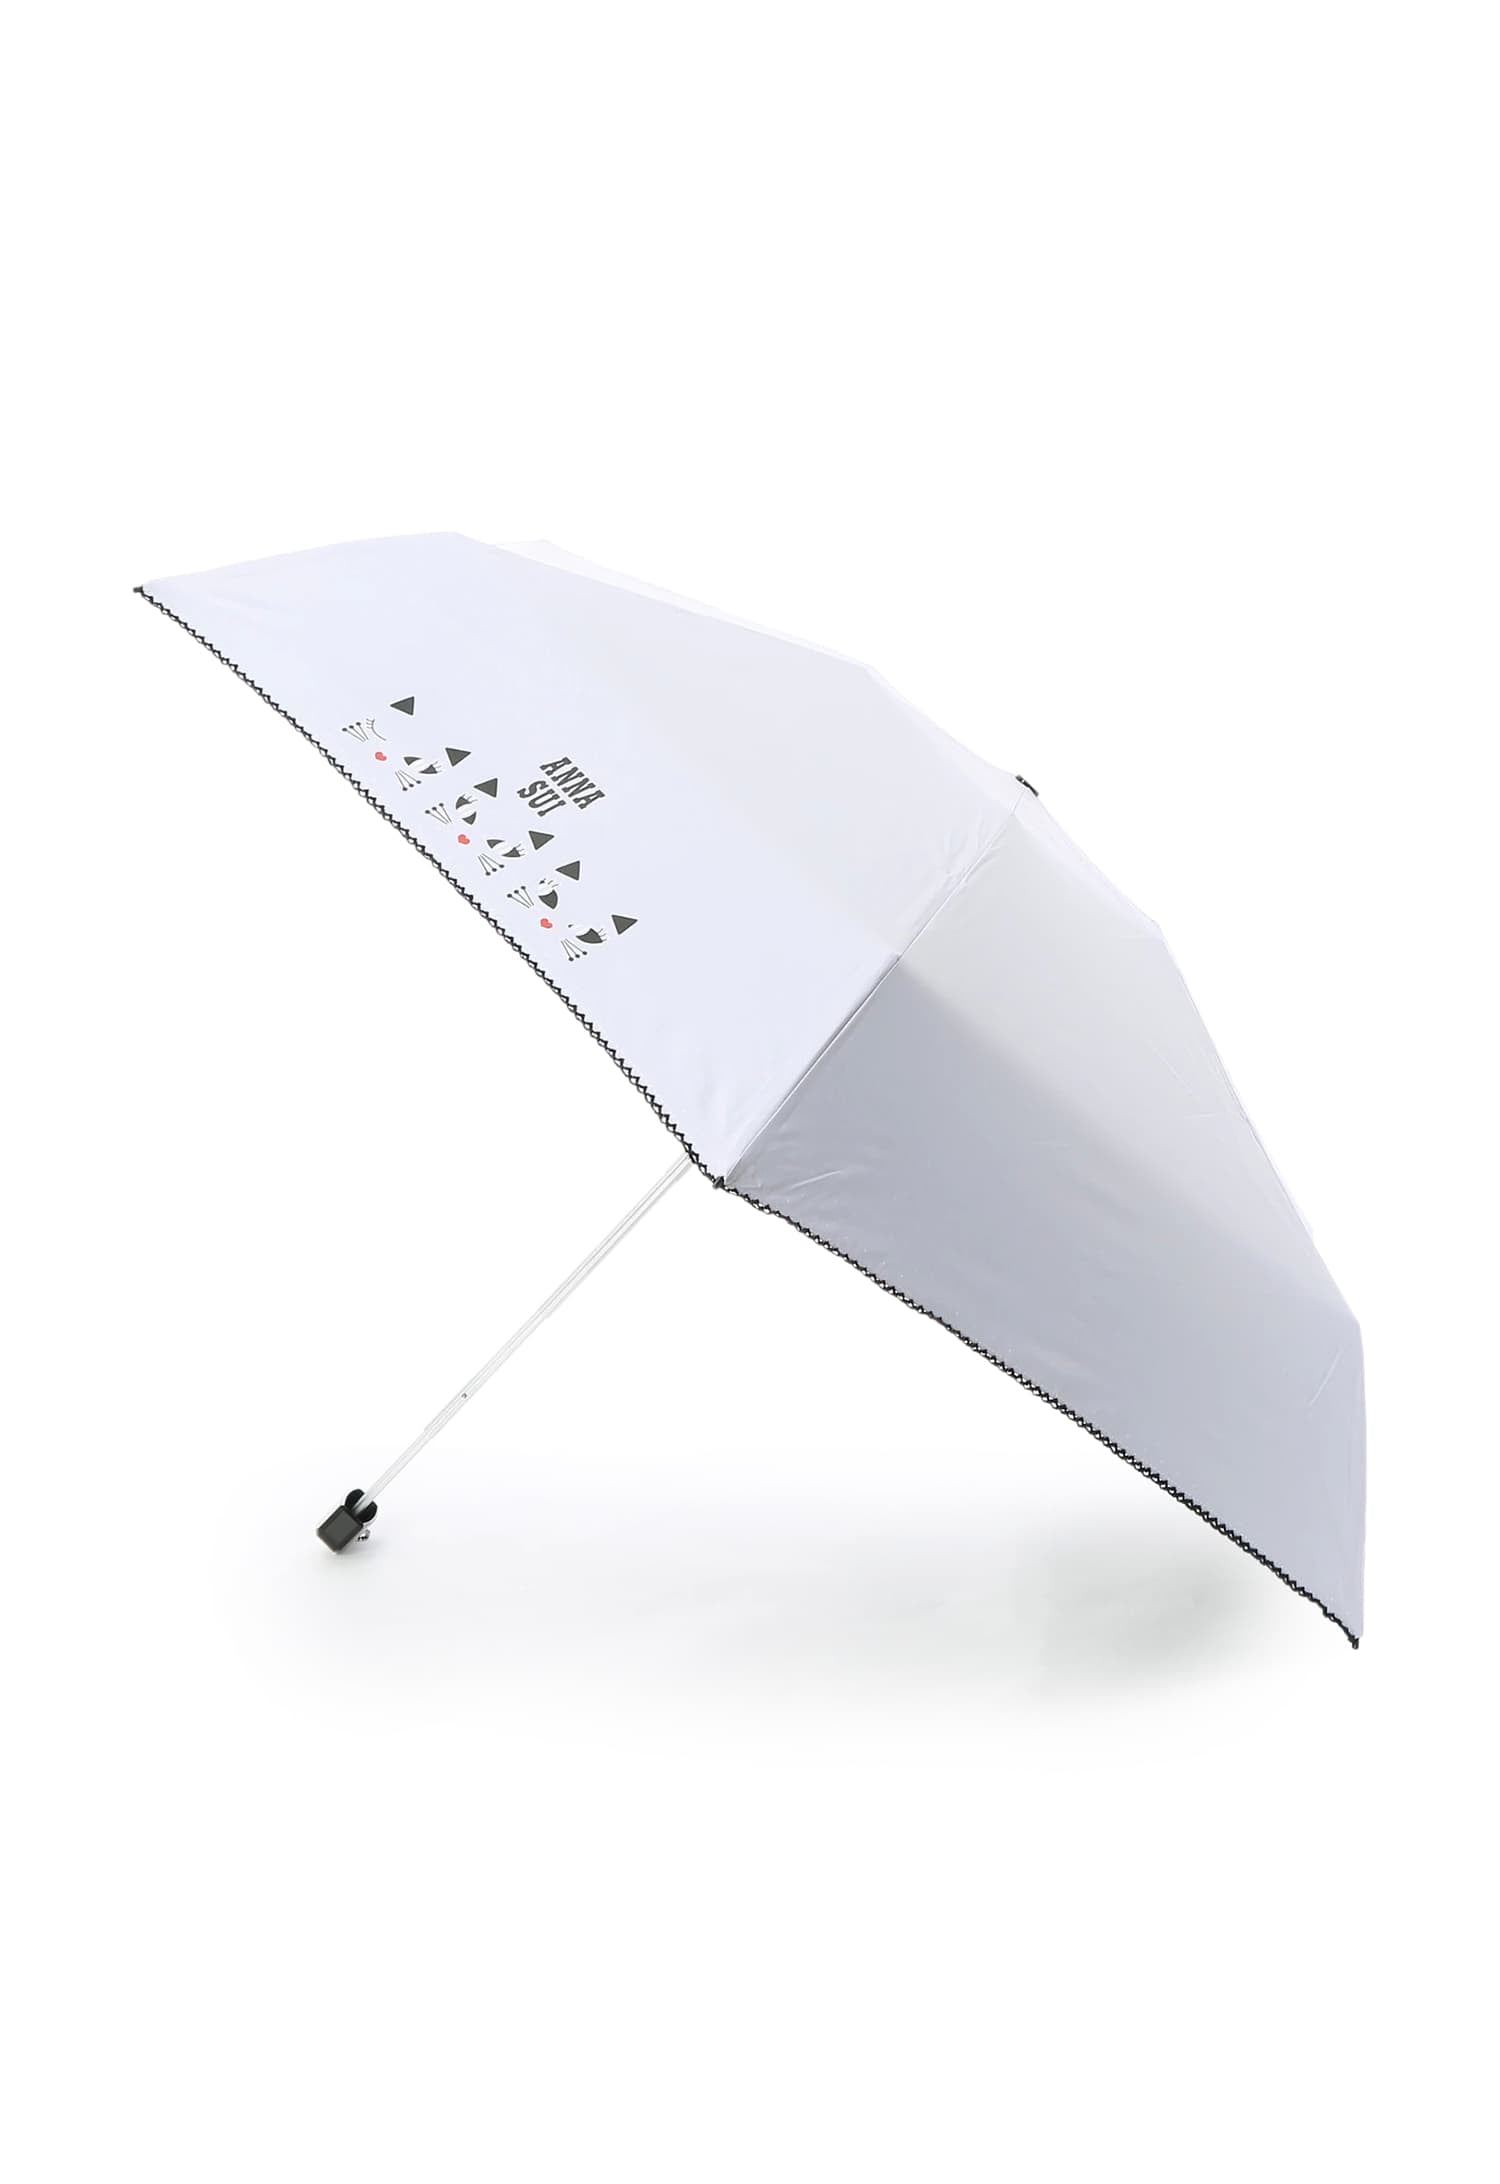 予約中！】 【新品】アナスイ 50cm グレー 折り畳み傘 軽量 晴雨兼用 